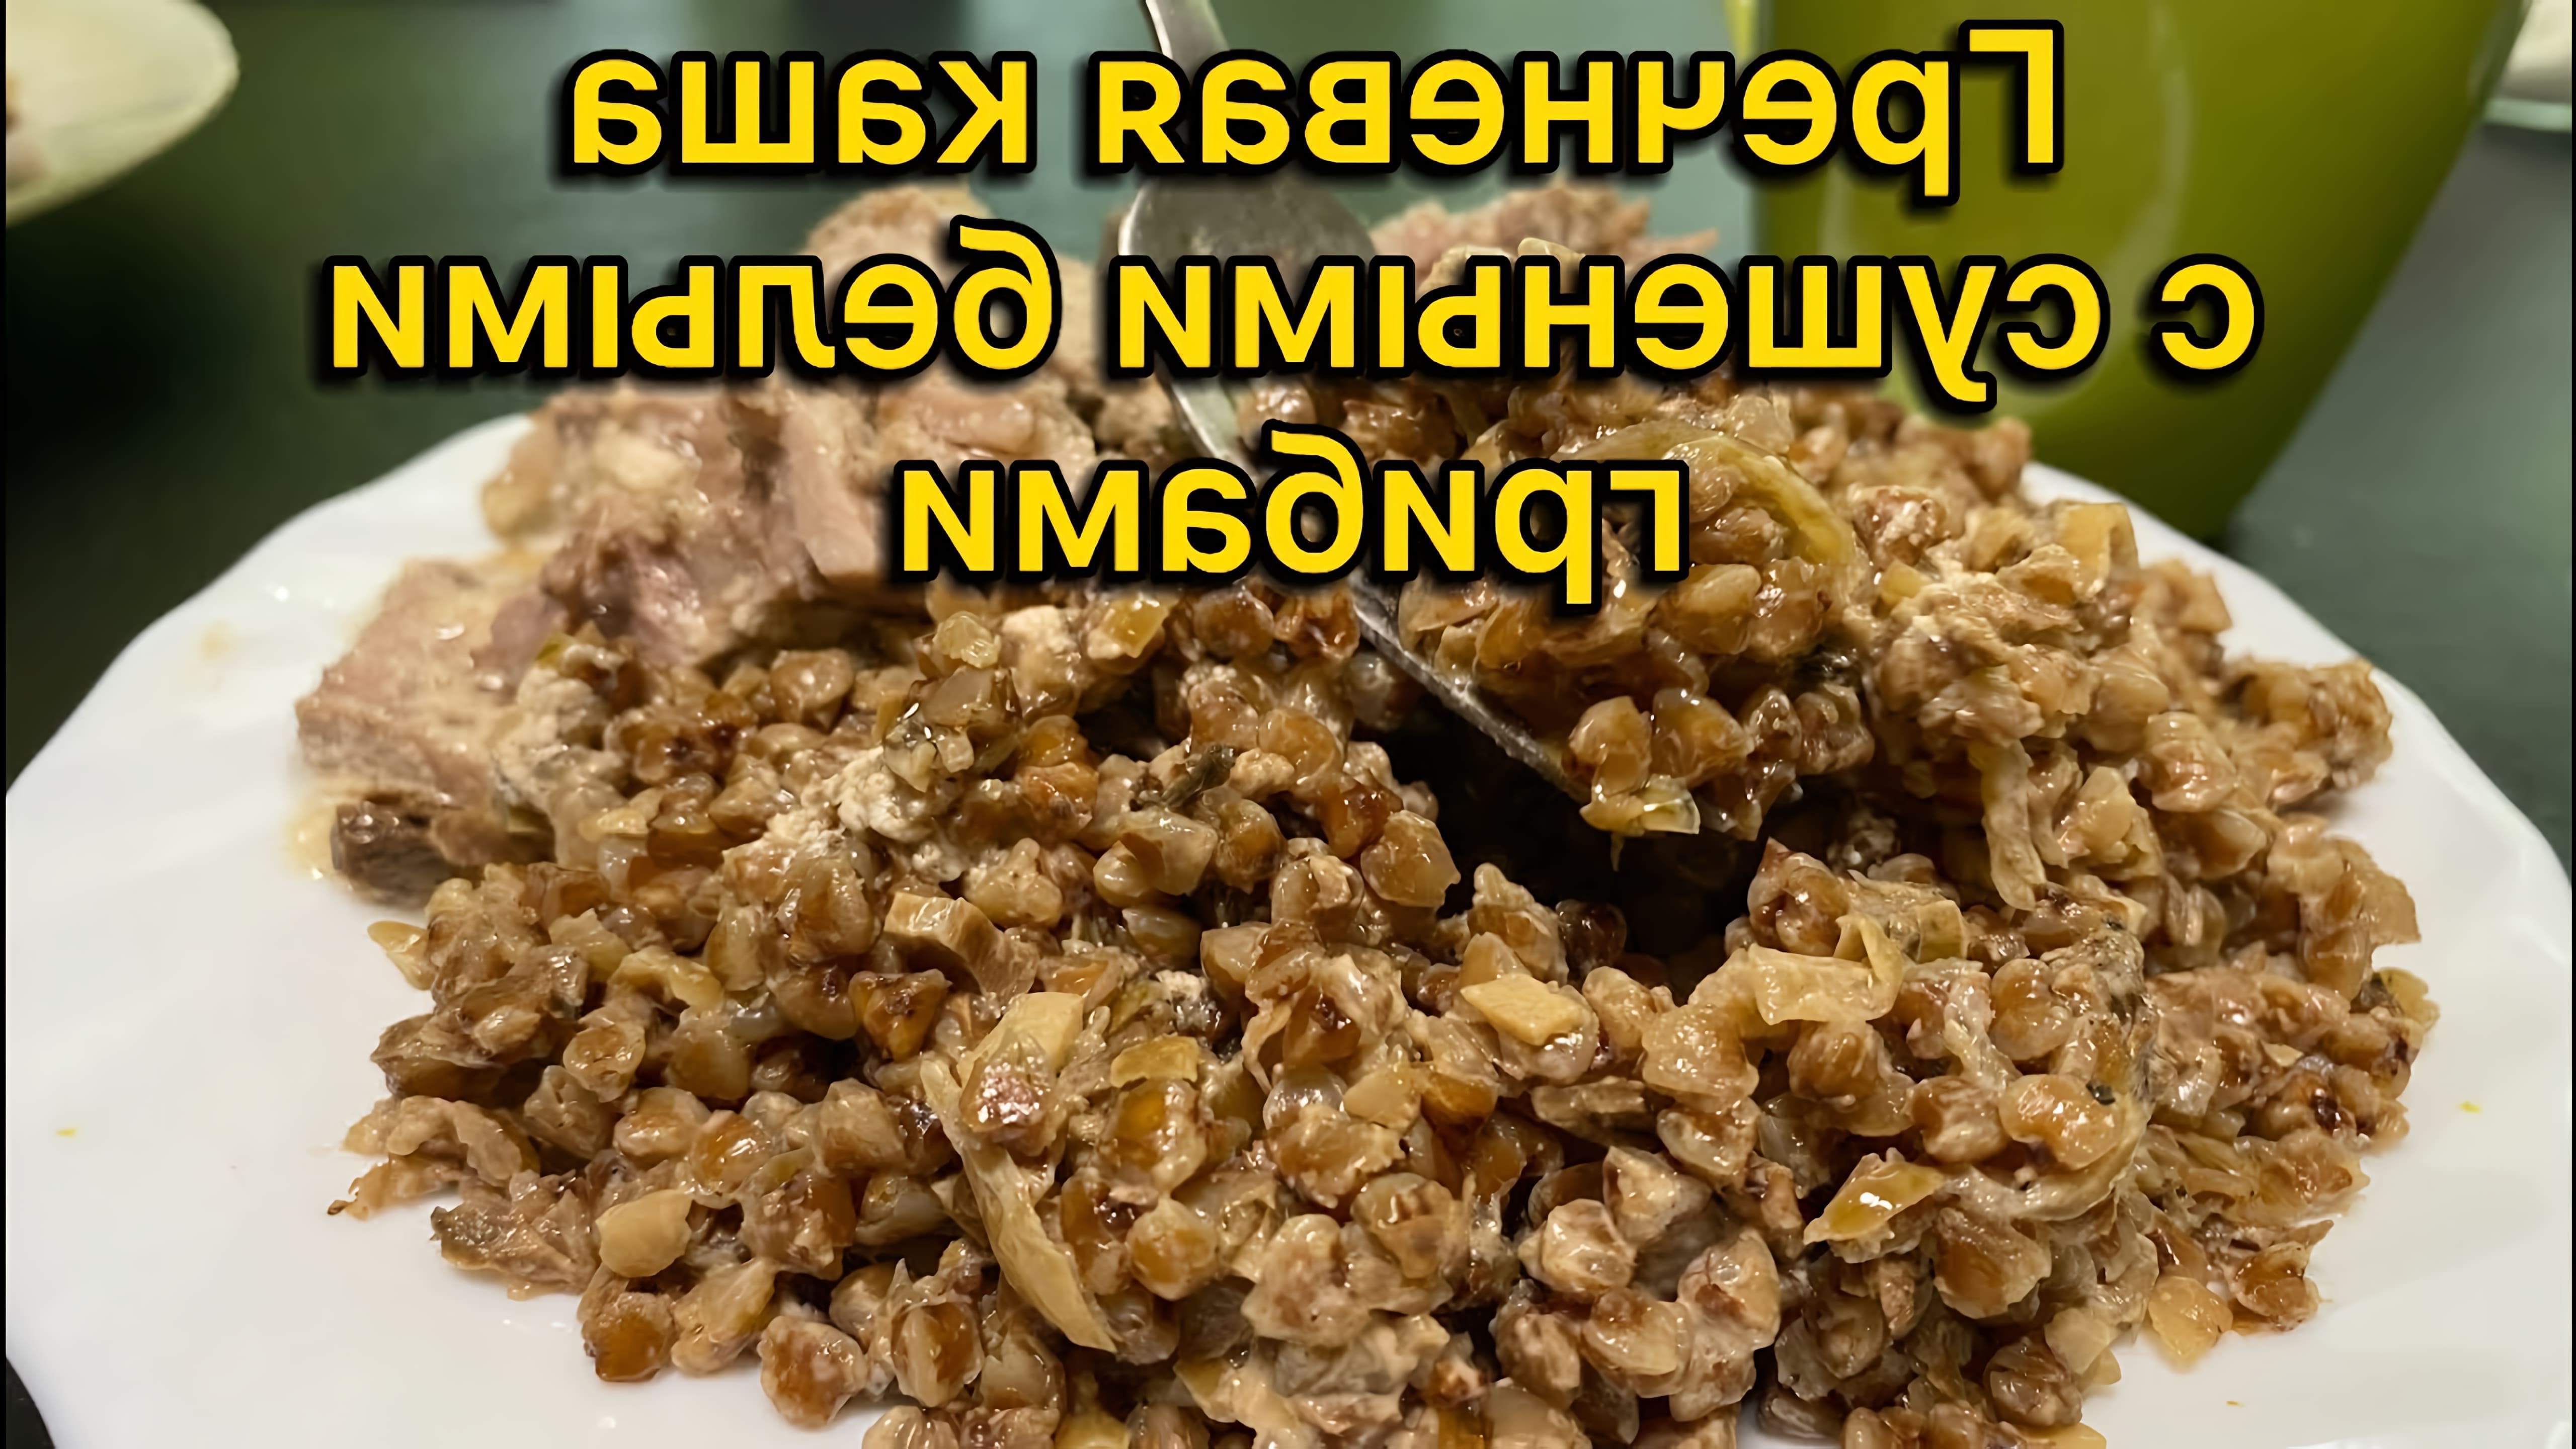 В этом видео-ролике будет показан процесс приготовления гречневой каши с сушеными белыми грибами